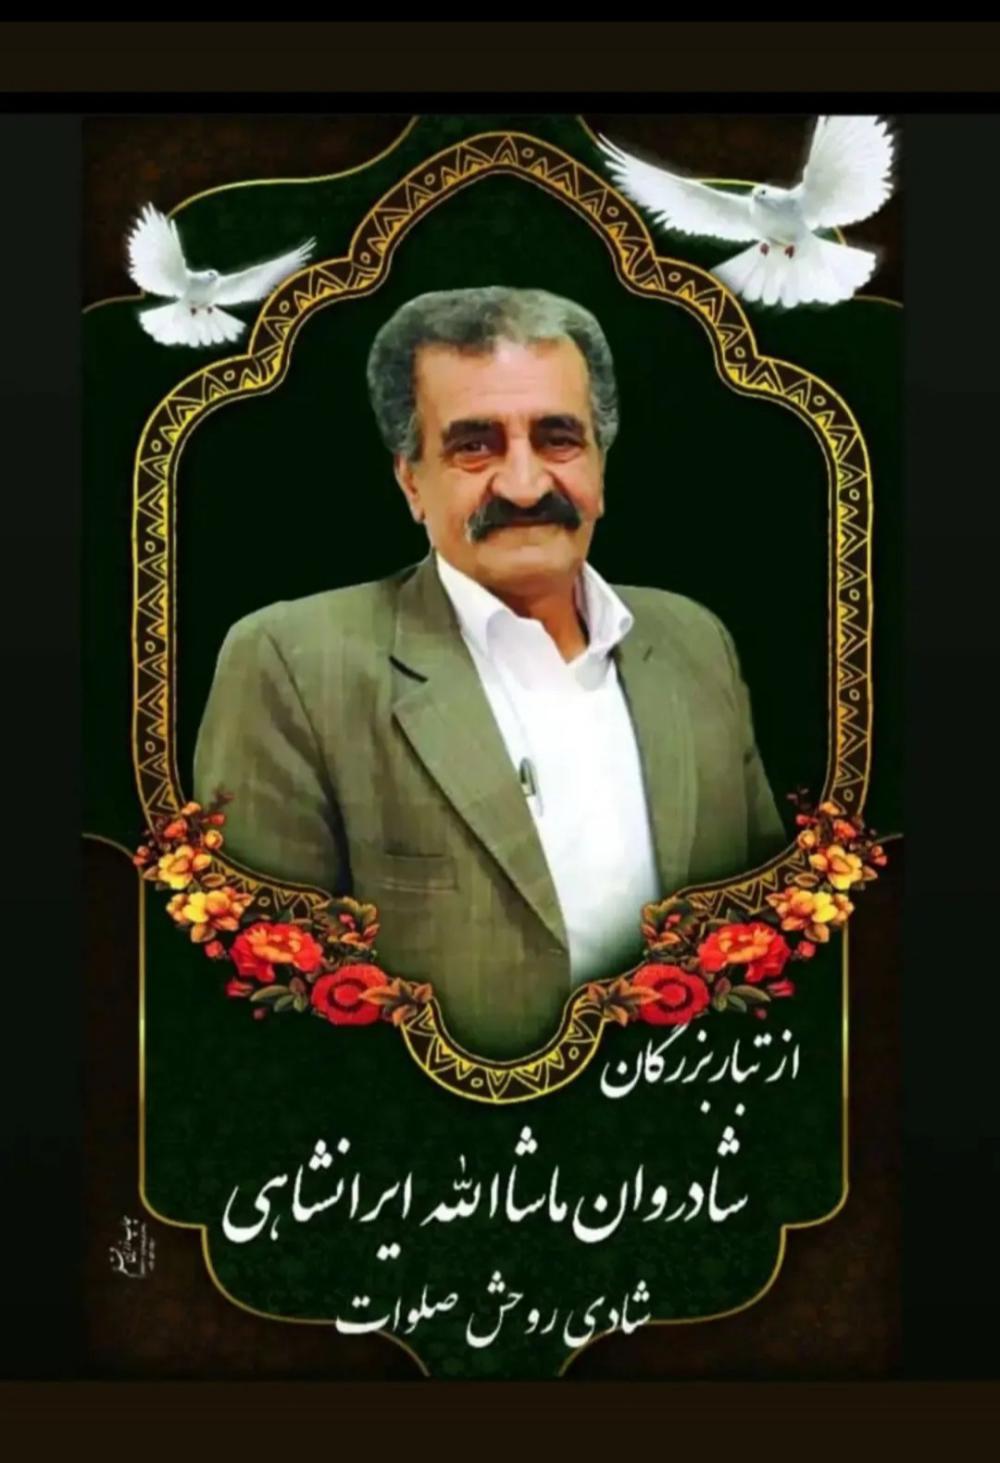 یادبود شادروان ماشاالله ایرانشاهی